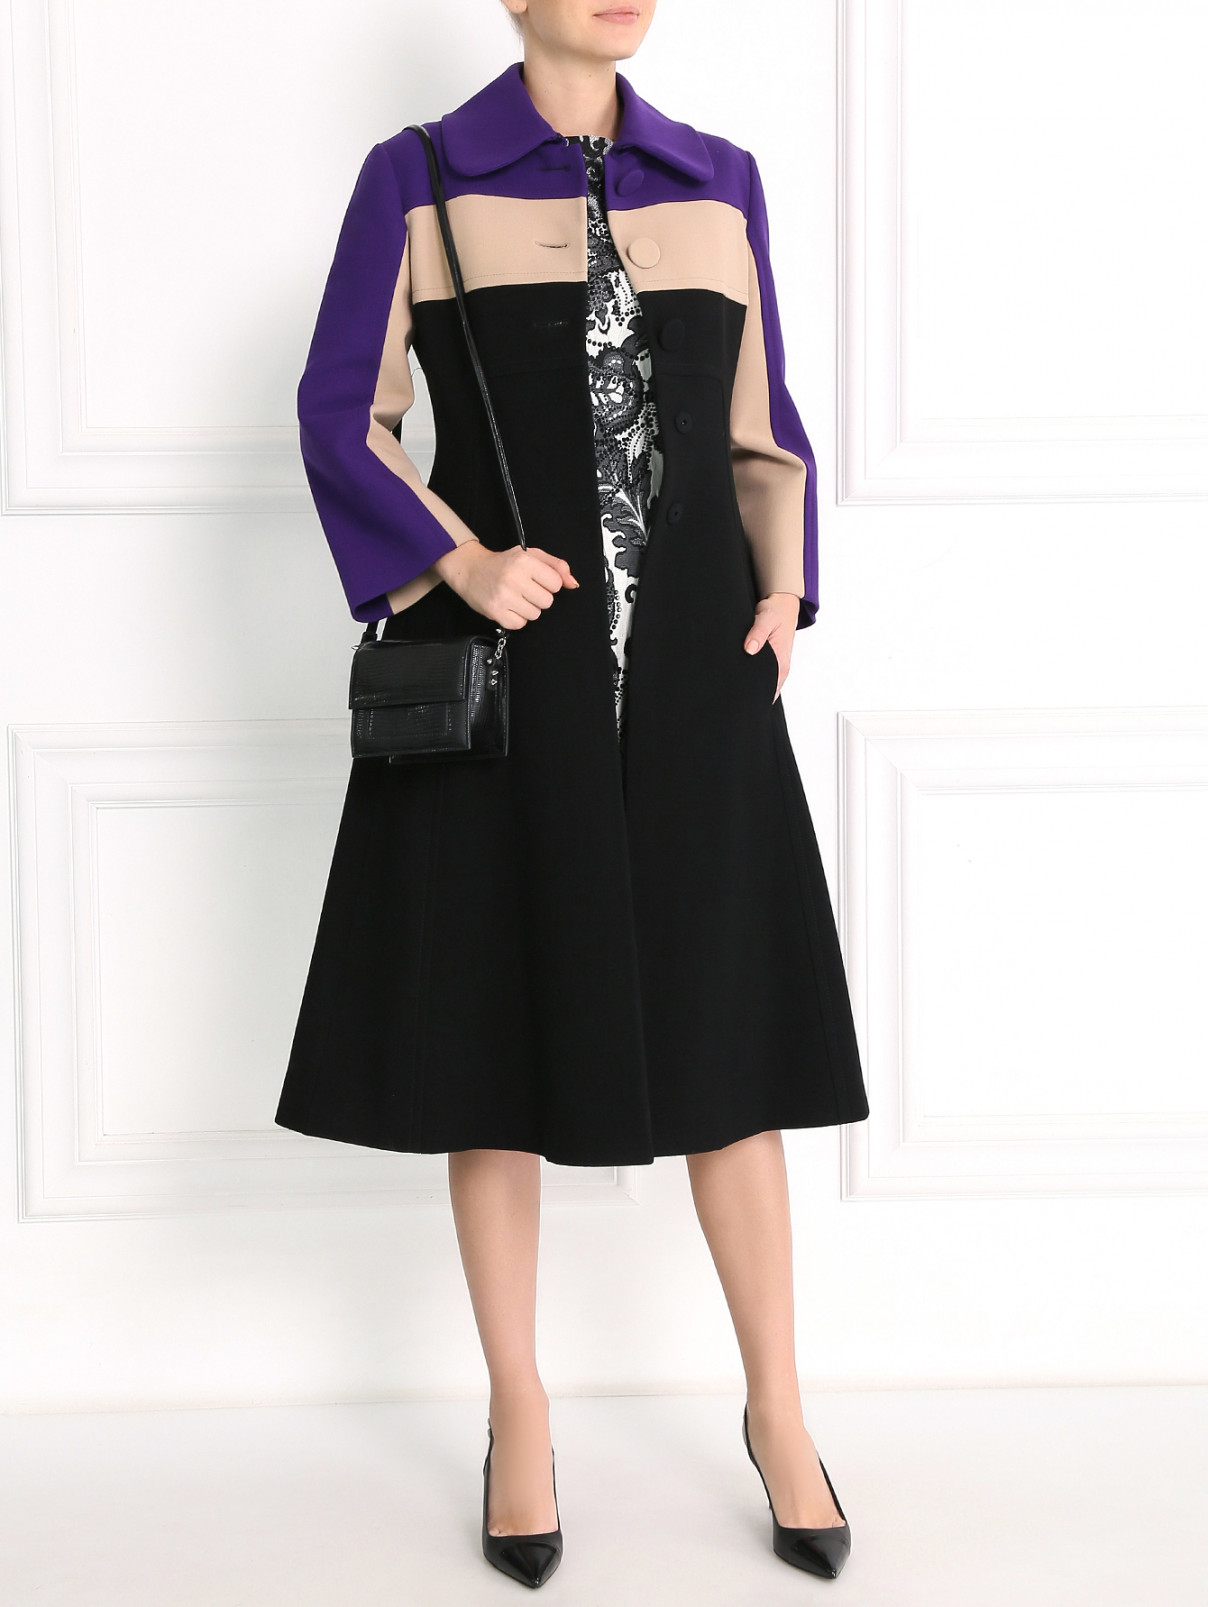 Платье-футляр, декорированное стразами Antonio Marras  –  Модель Общий вид  – Цвет:  Черный